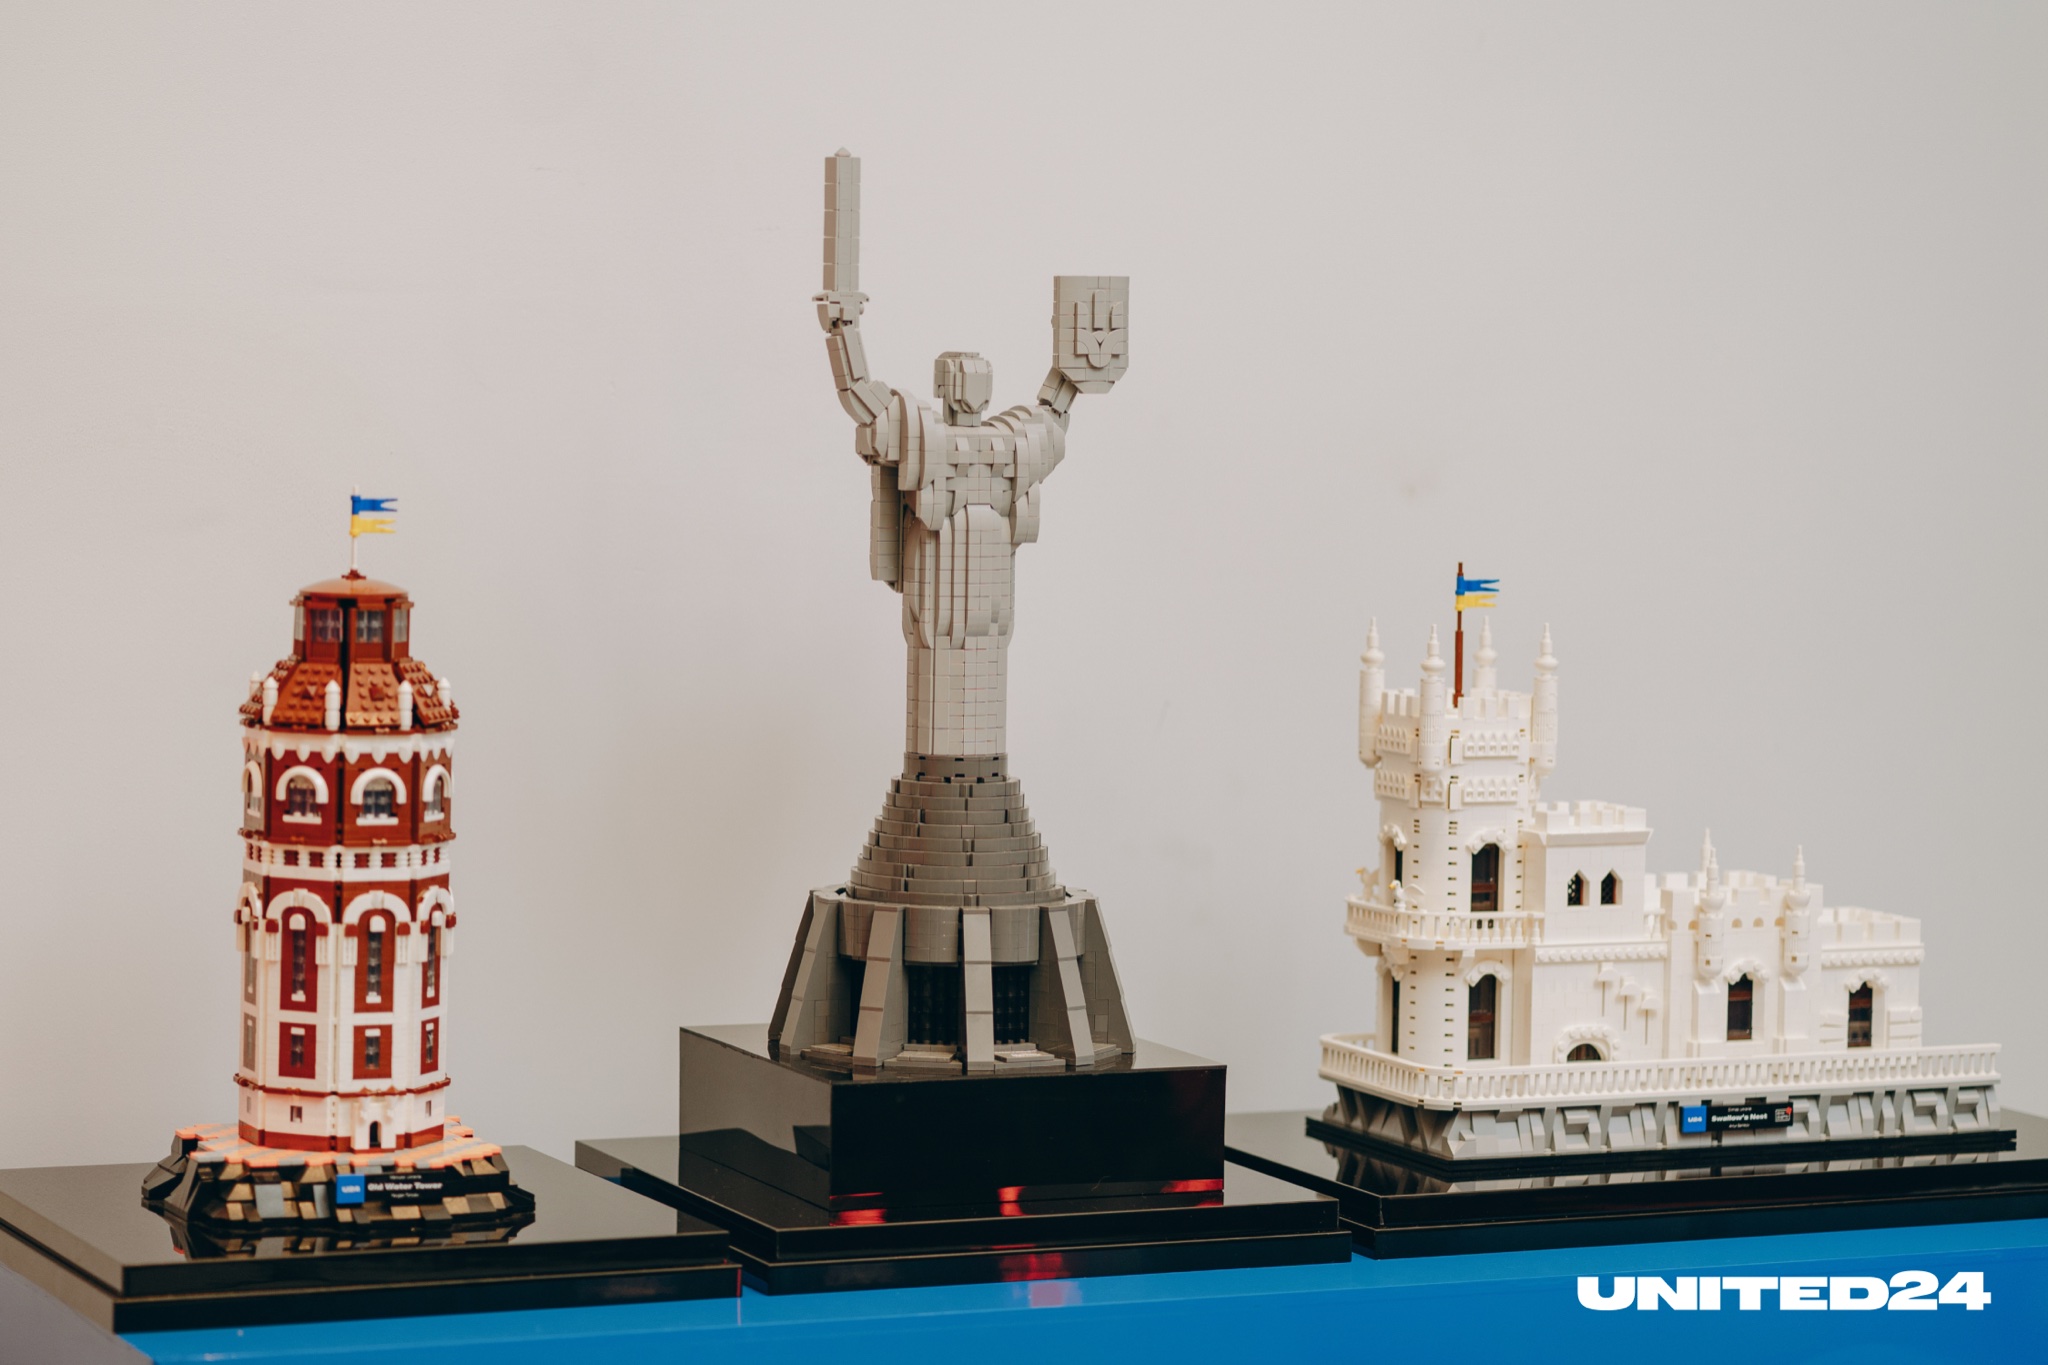 UNITED24 zaprezentowało ukraińskie zabytki wykonane z kostek LEGO - Ukraińską Matkę, wieżę ciśnień w Mariupolu i Jaskółcze Gniazdo.